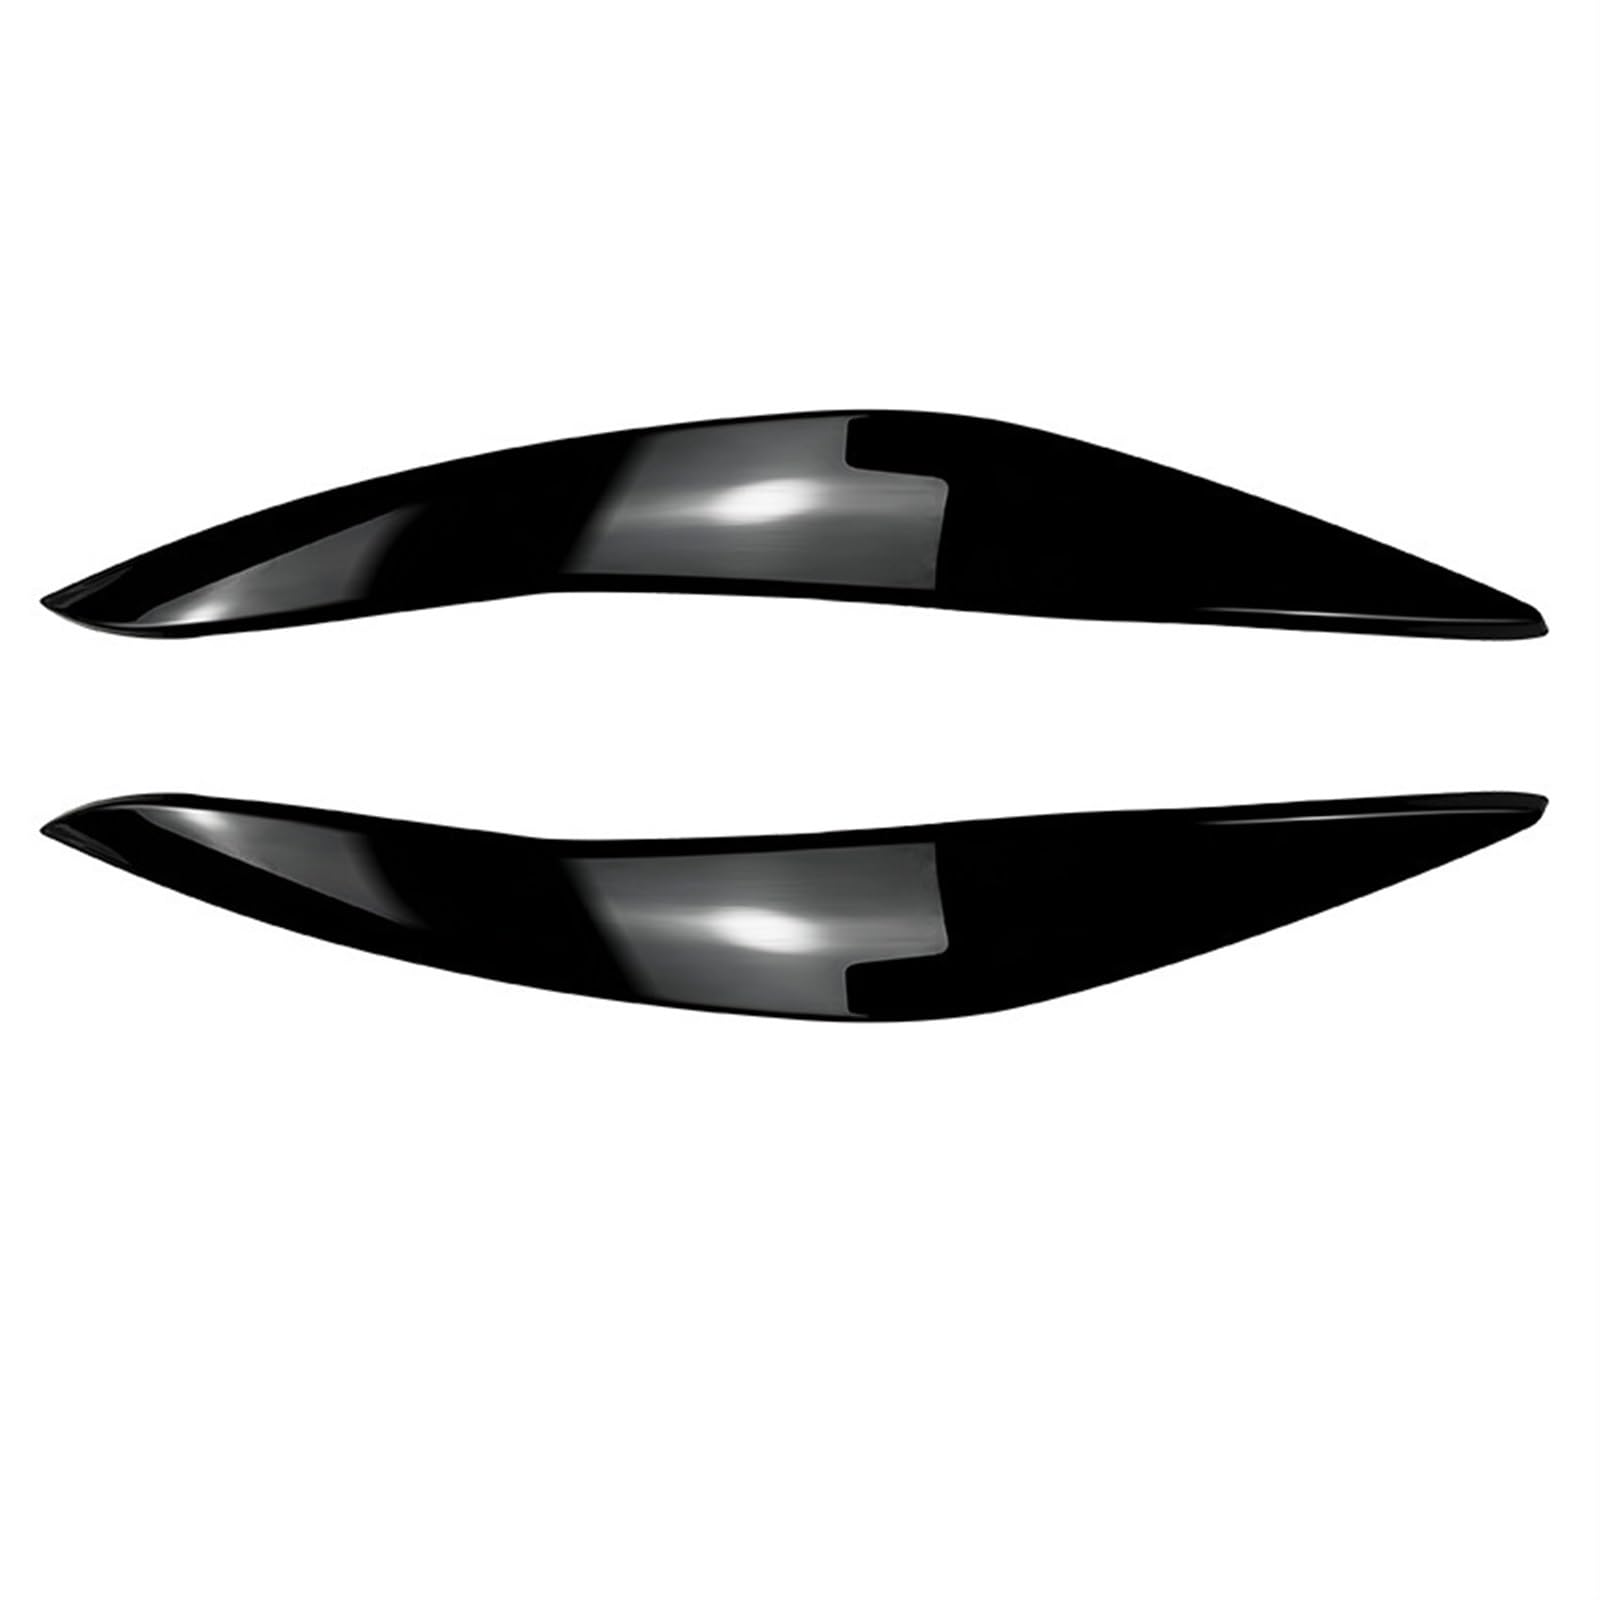 EVURU Scheinwerfer-Augenbrauen, Passend for BMW 5 Series F10 F11 2011 2012 2013 2014, glänzendes schwarzes ABS, 2 Stück Augenlid-Frontscheinwerfer-Augenbrauen-Abdeckung, Augendeckel-Ordnungsaufkleber von EVURU